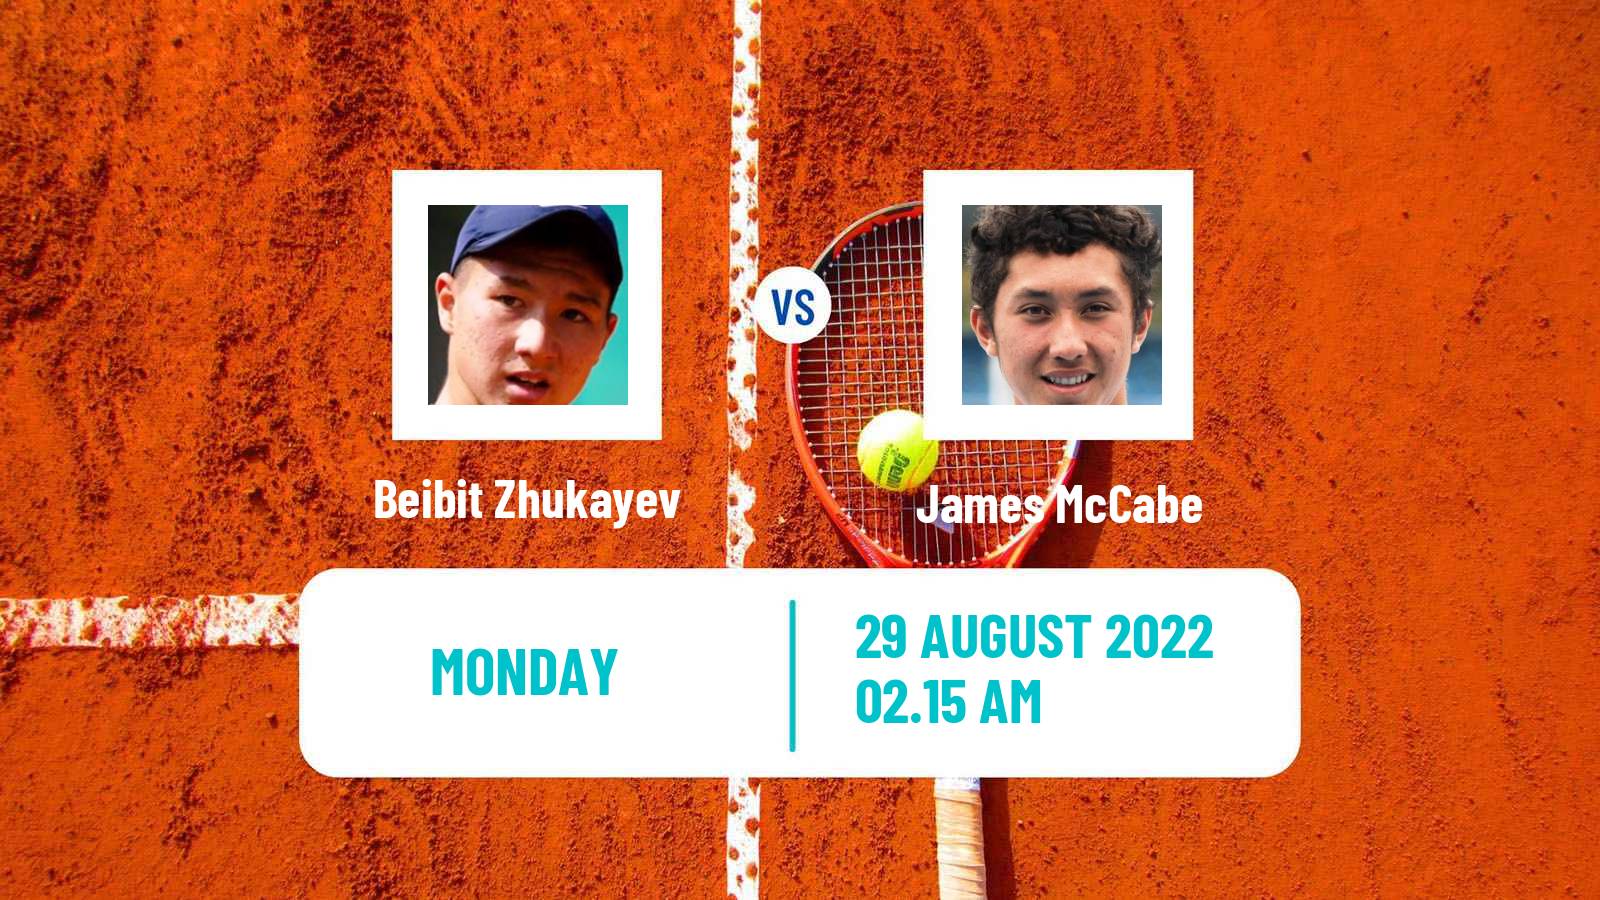 Tennis ATP Challenger Beibit Zhukayev - James McCabe